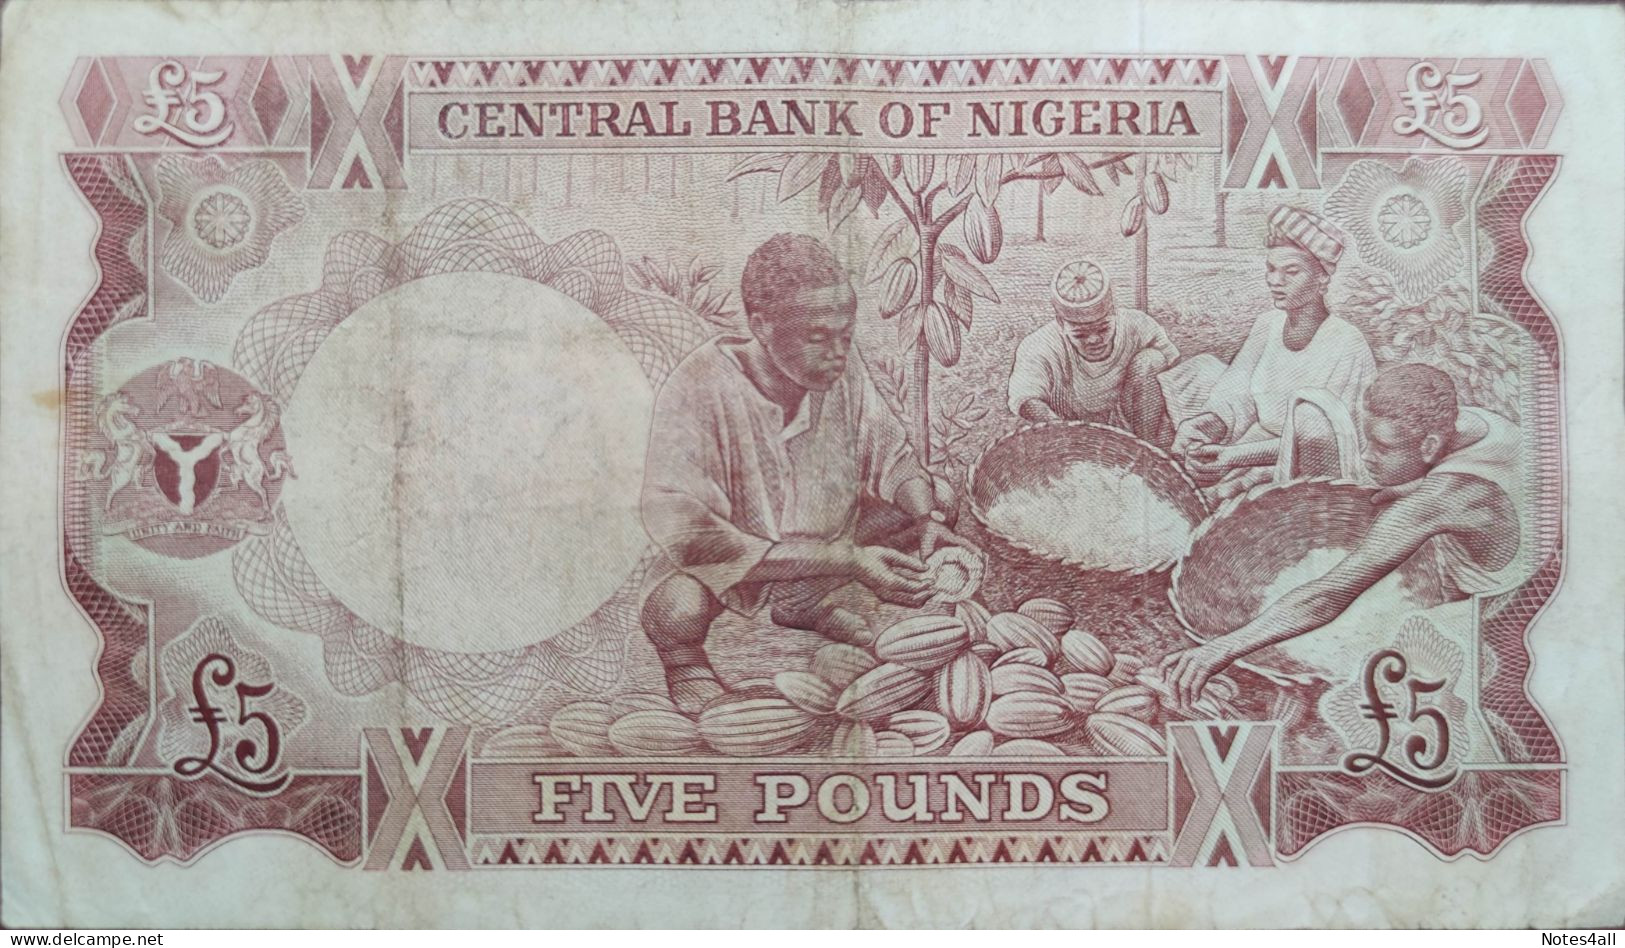 NIGERIA 5 POUNDS 1968 P-13a VF++ SERIES 34 622480 - Nigeria